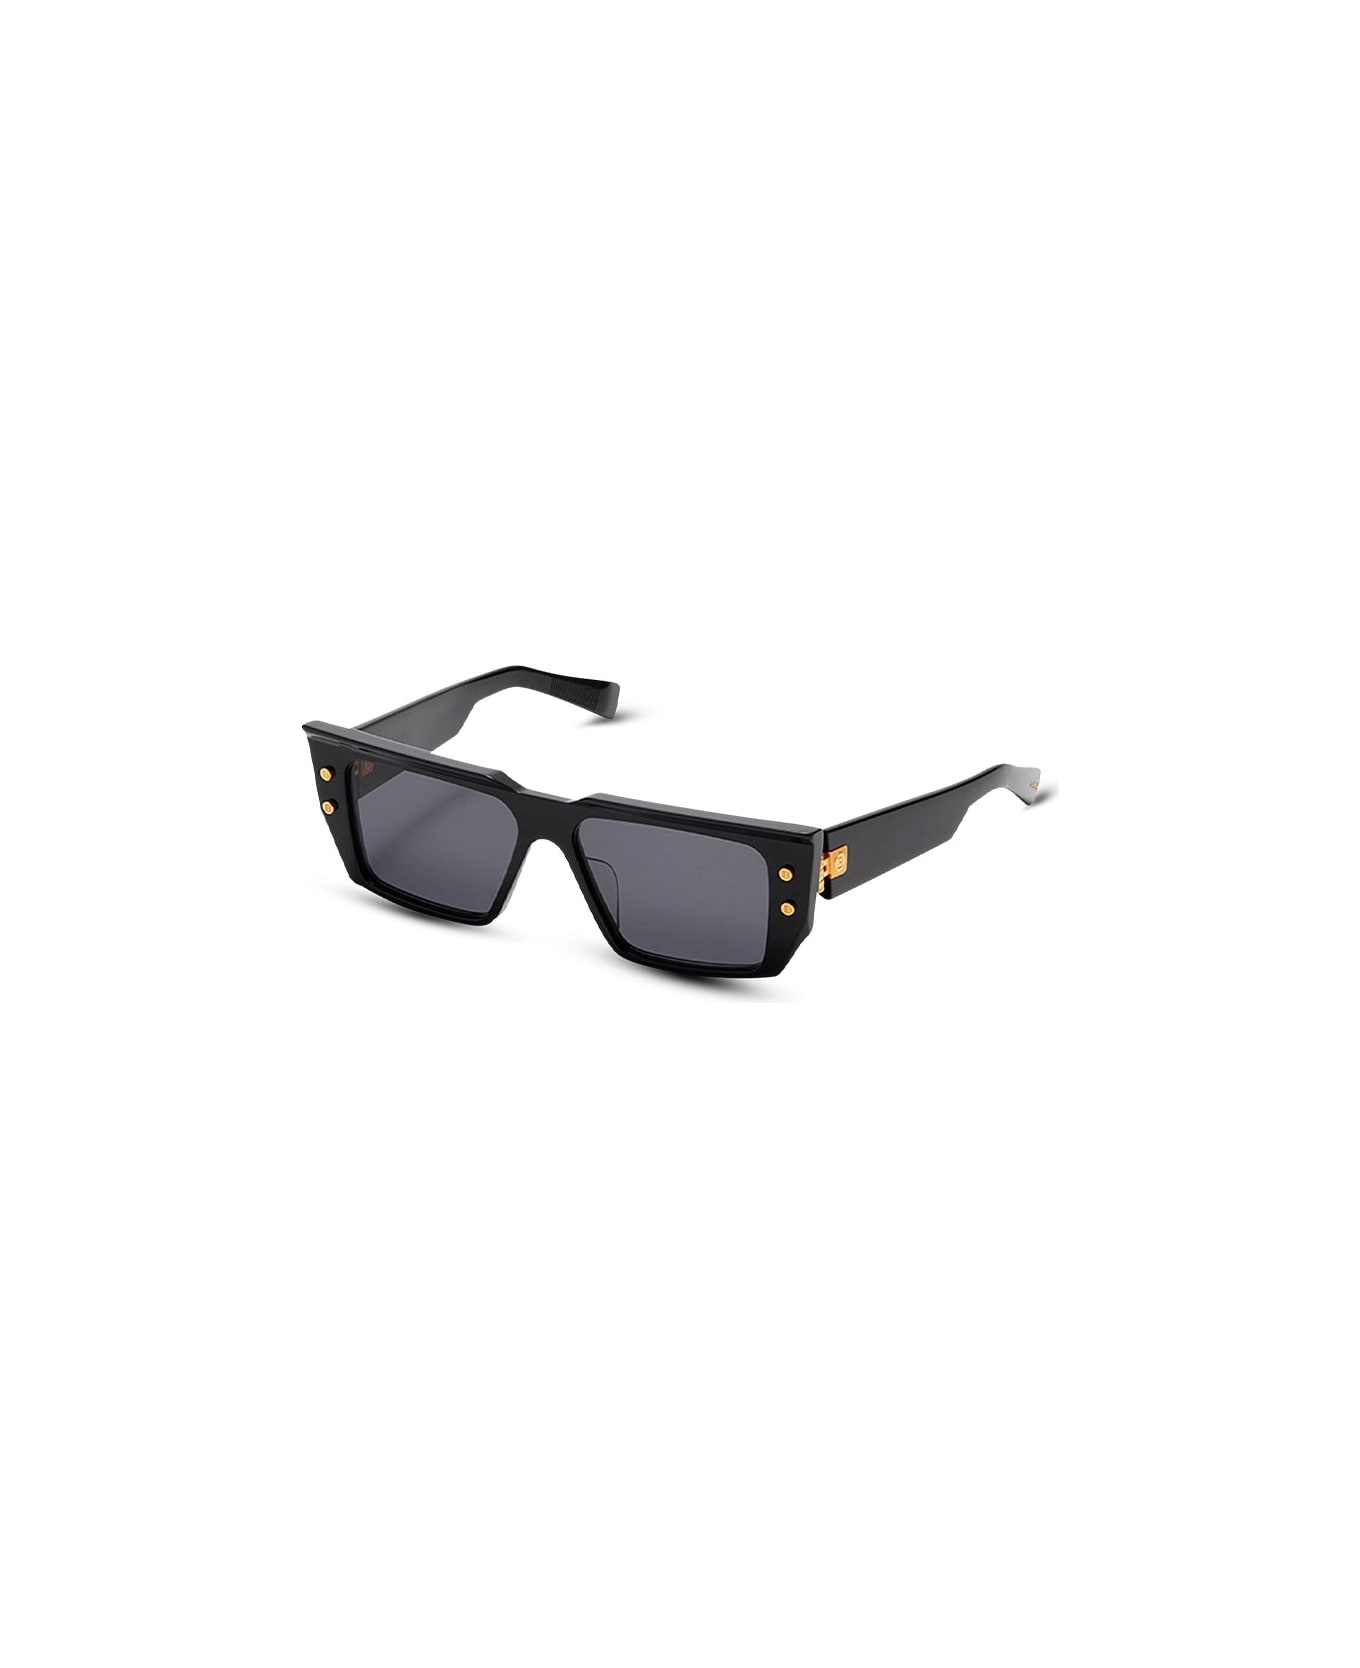 Balmain B-vi - Black / Gold Sunglasses pilot-frame Sunglasses pilot-frame - gold, black